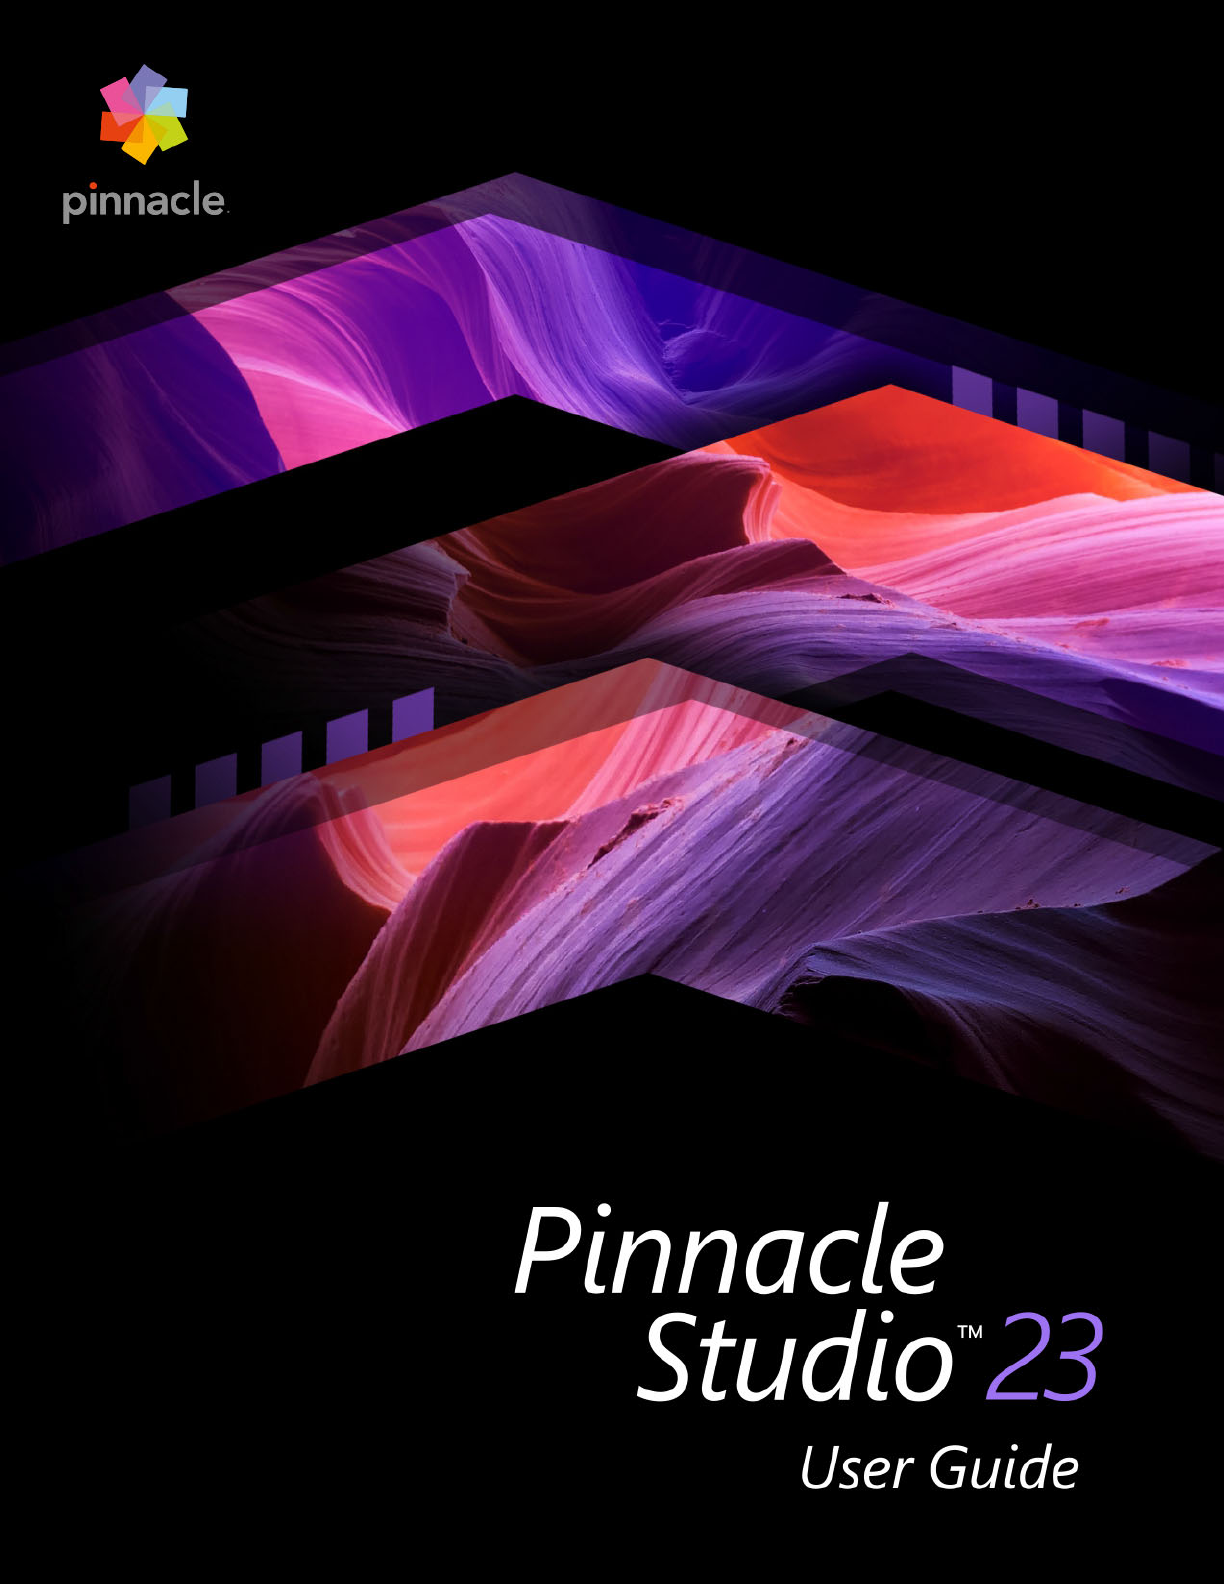 pinnacle studio 18 ultimate manual